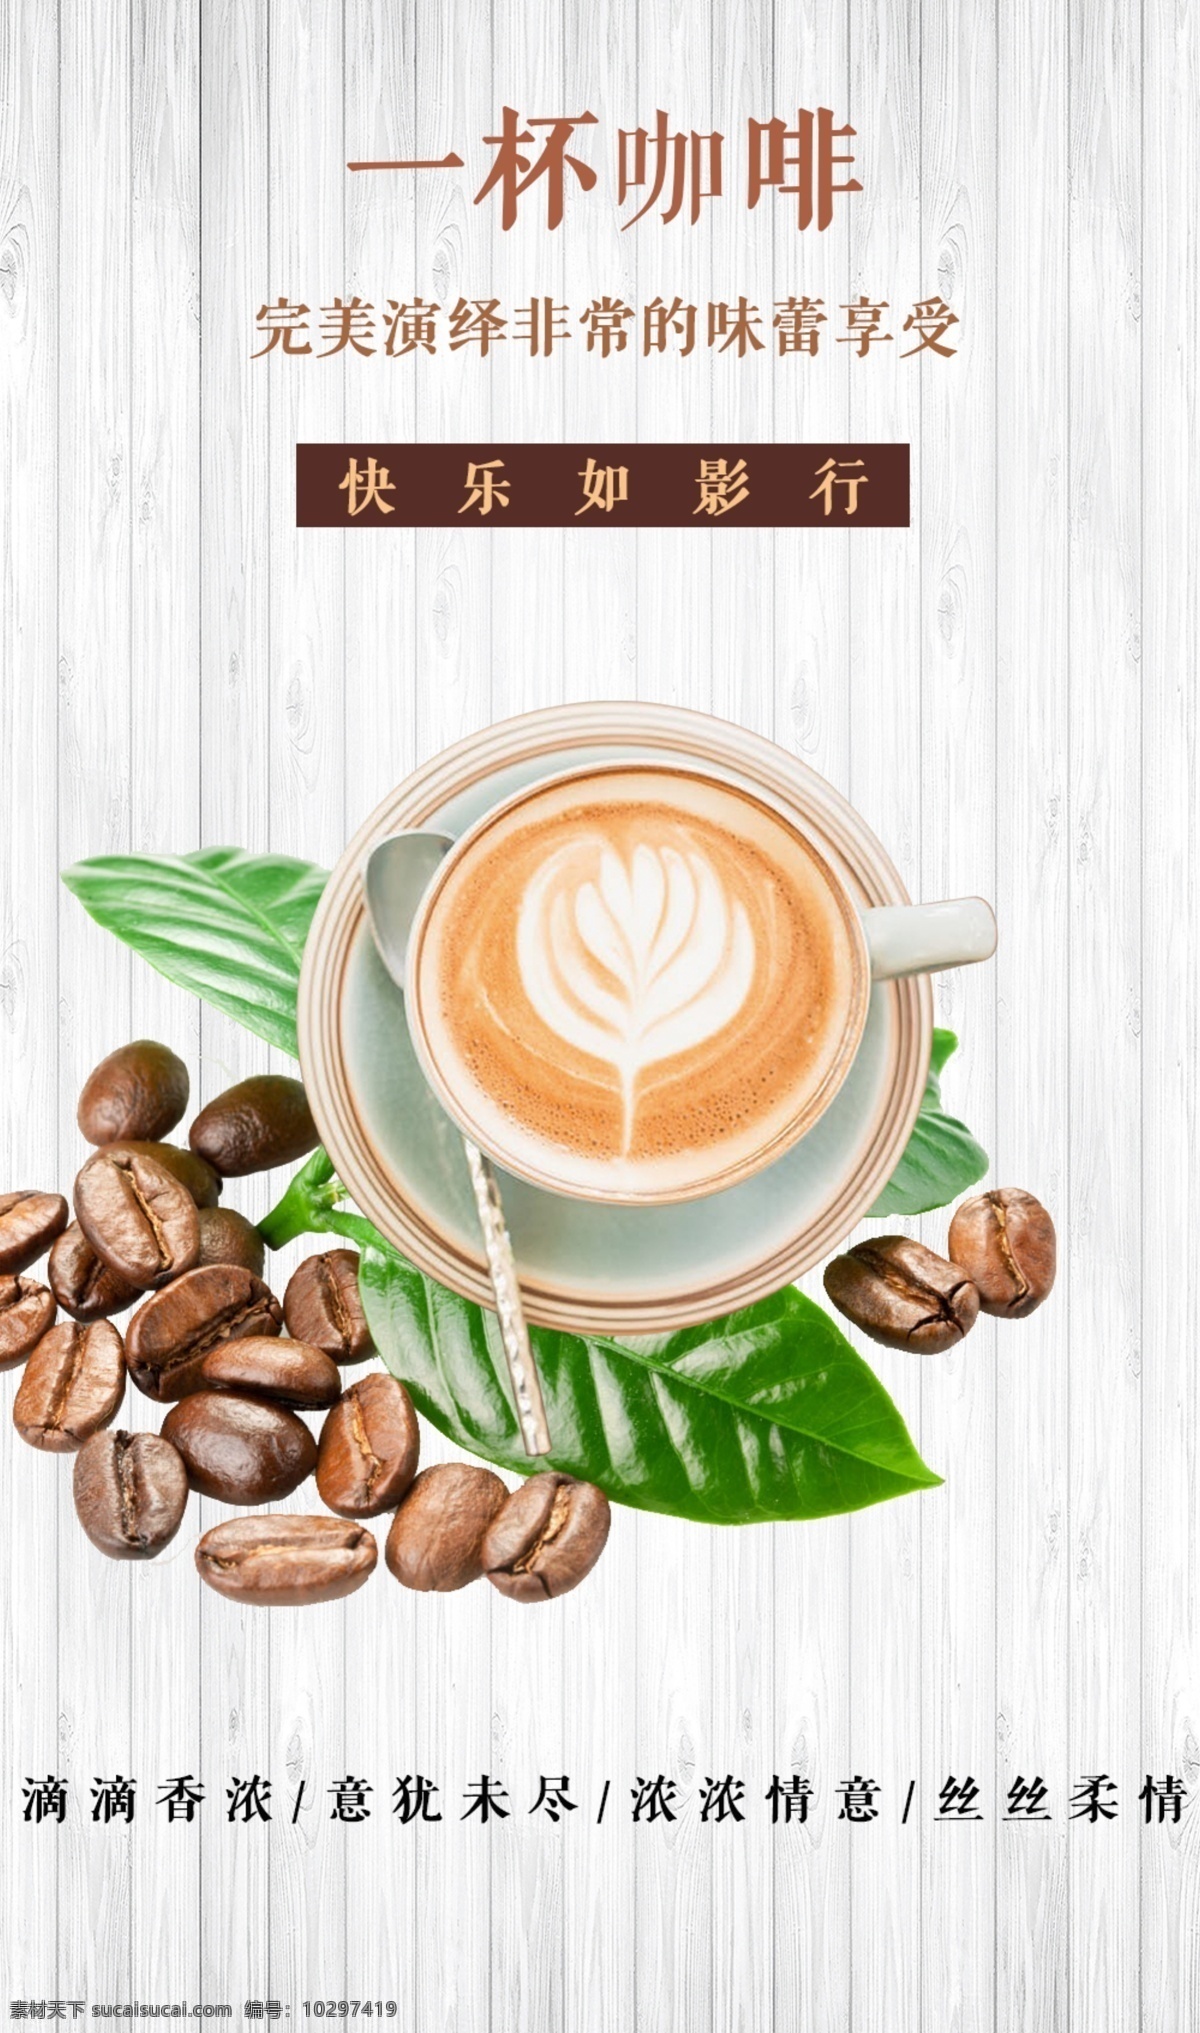 咖啡厅 宣传 效果图 广告 海报 图 咖啡效果图 咖啡厅宣传图 咖啡图片 咖啡简约图片 咖啡清新图片 咖啡文艺图片 分层